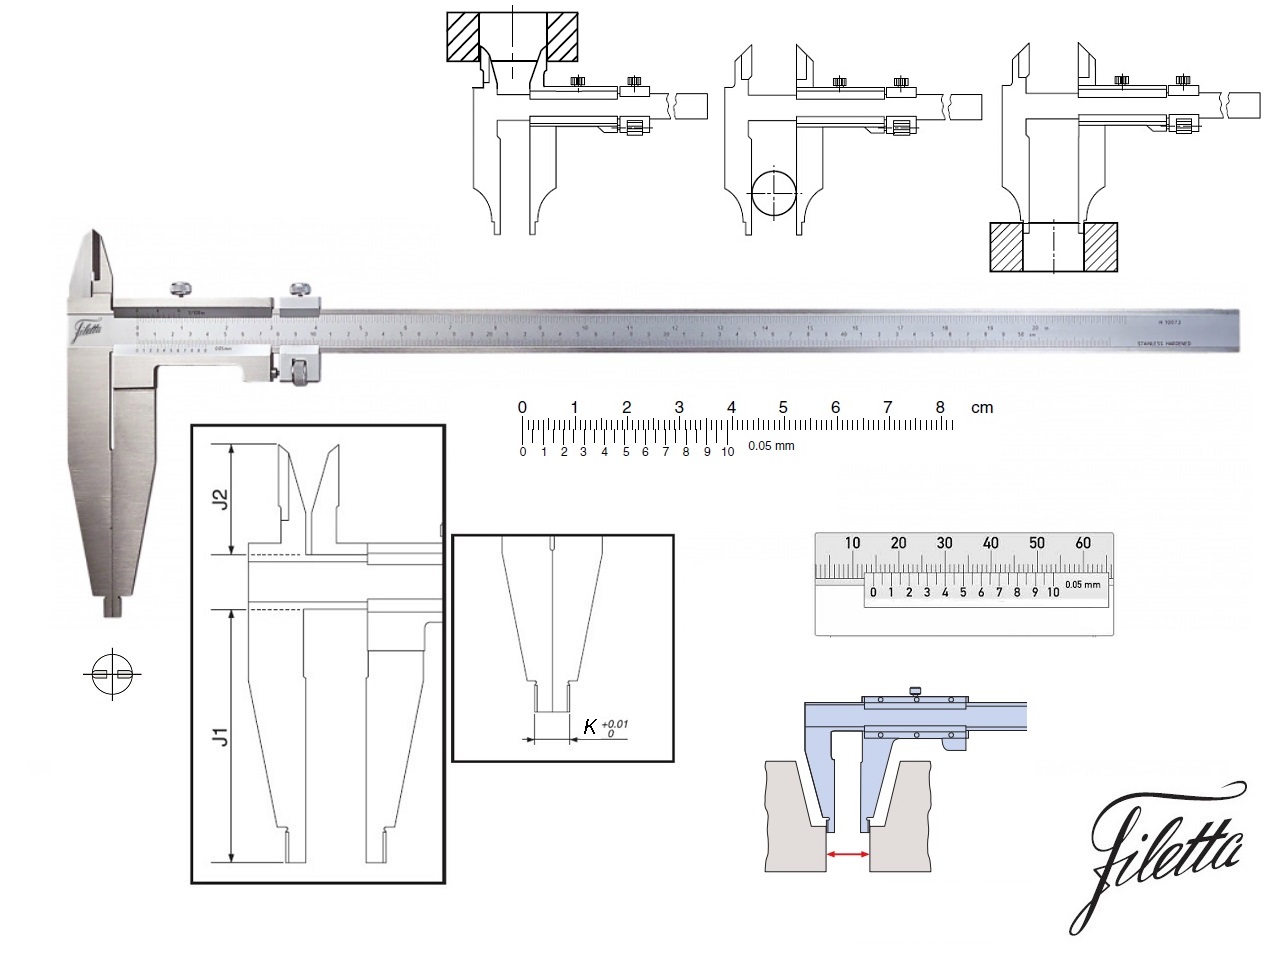 Posuvné měřítko Filetta 0-2000 mm, čelisti 200 mm, s měřicími nožíky pro vnitřní měření